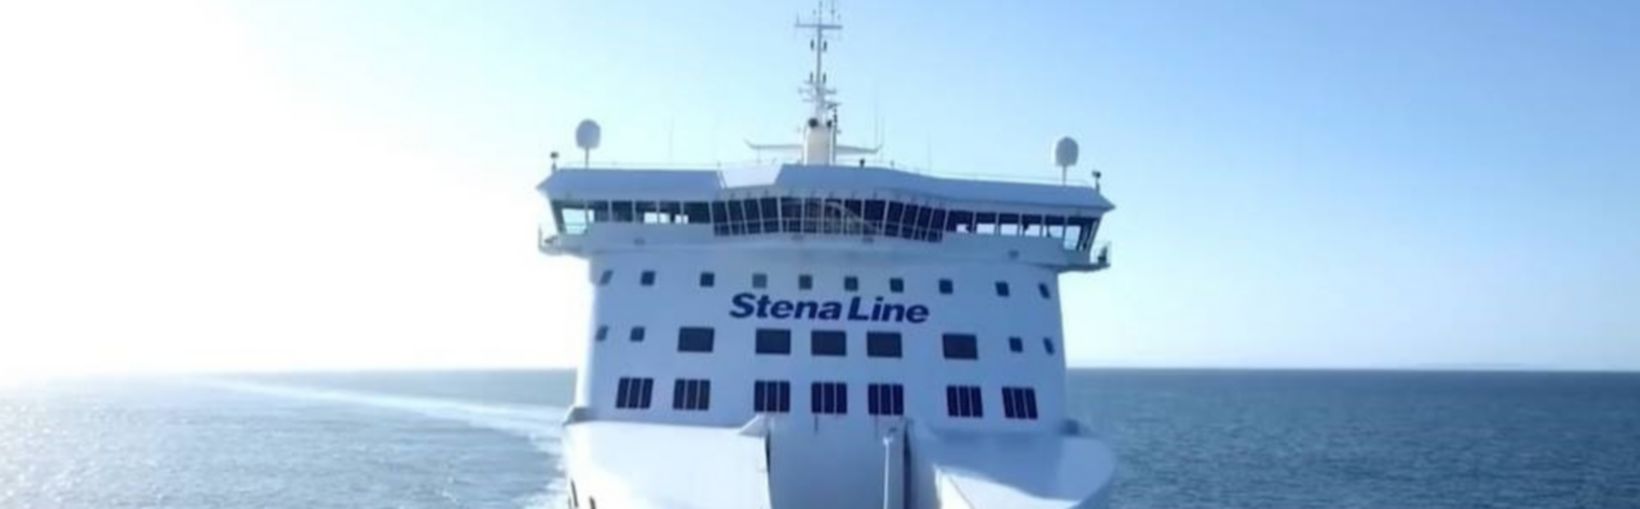 Færgen Stena Superfast VIII til søs